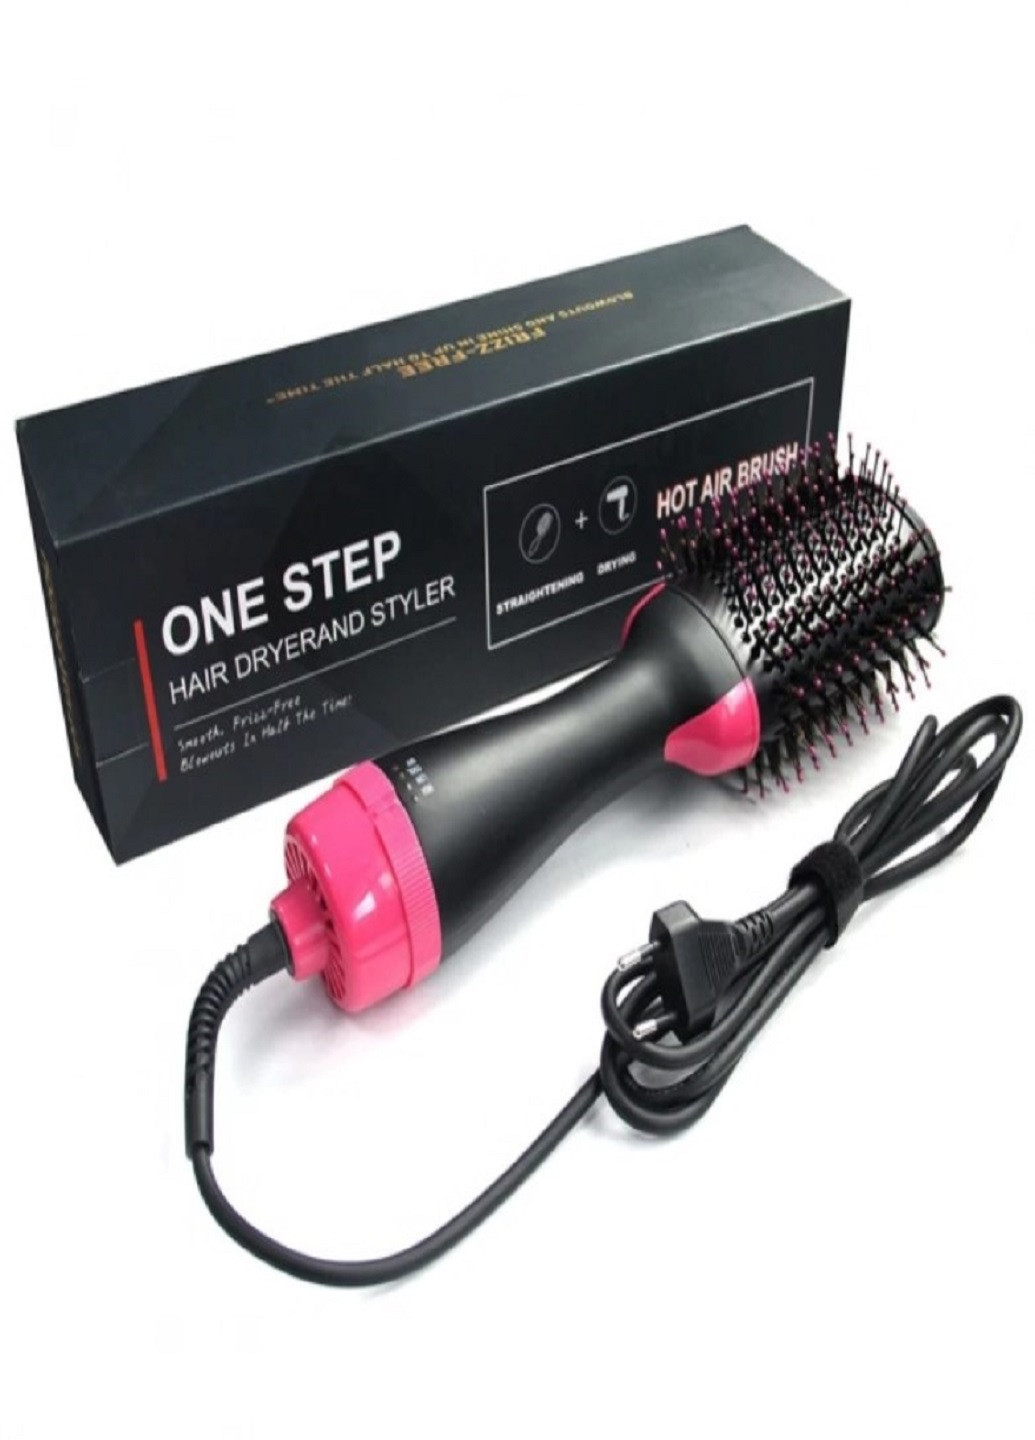 Фен щітка One Step Hair Dryer and Styler Стайлер 3 в 1 для укладання волосся VTech (259522124)